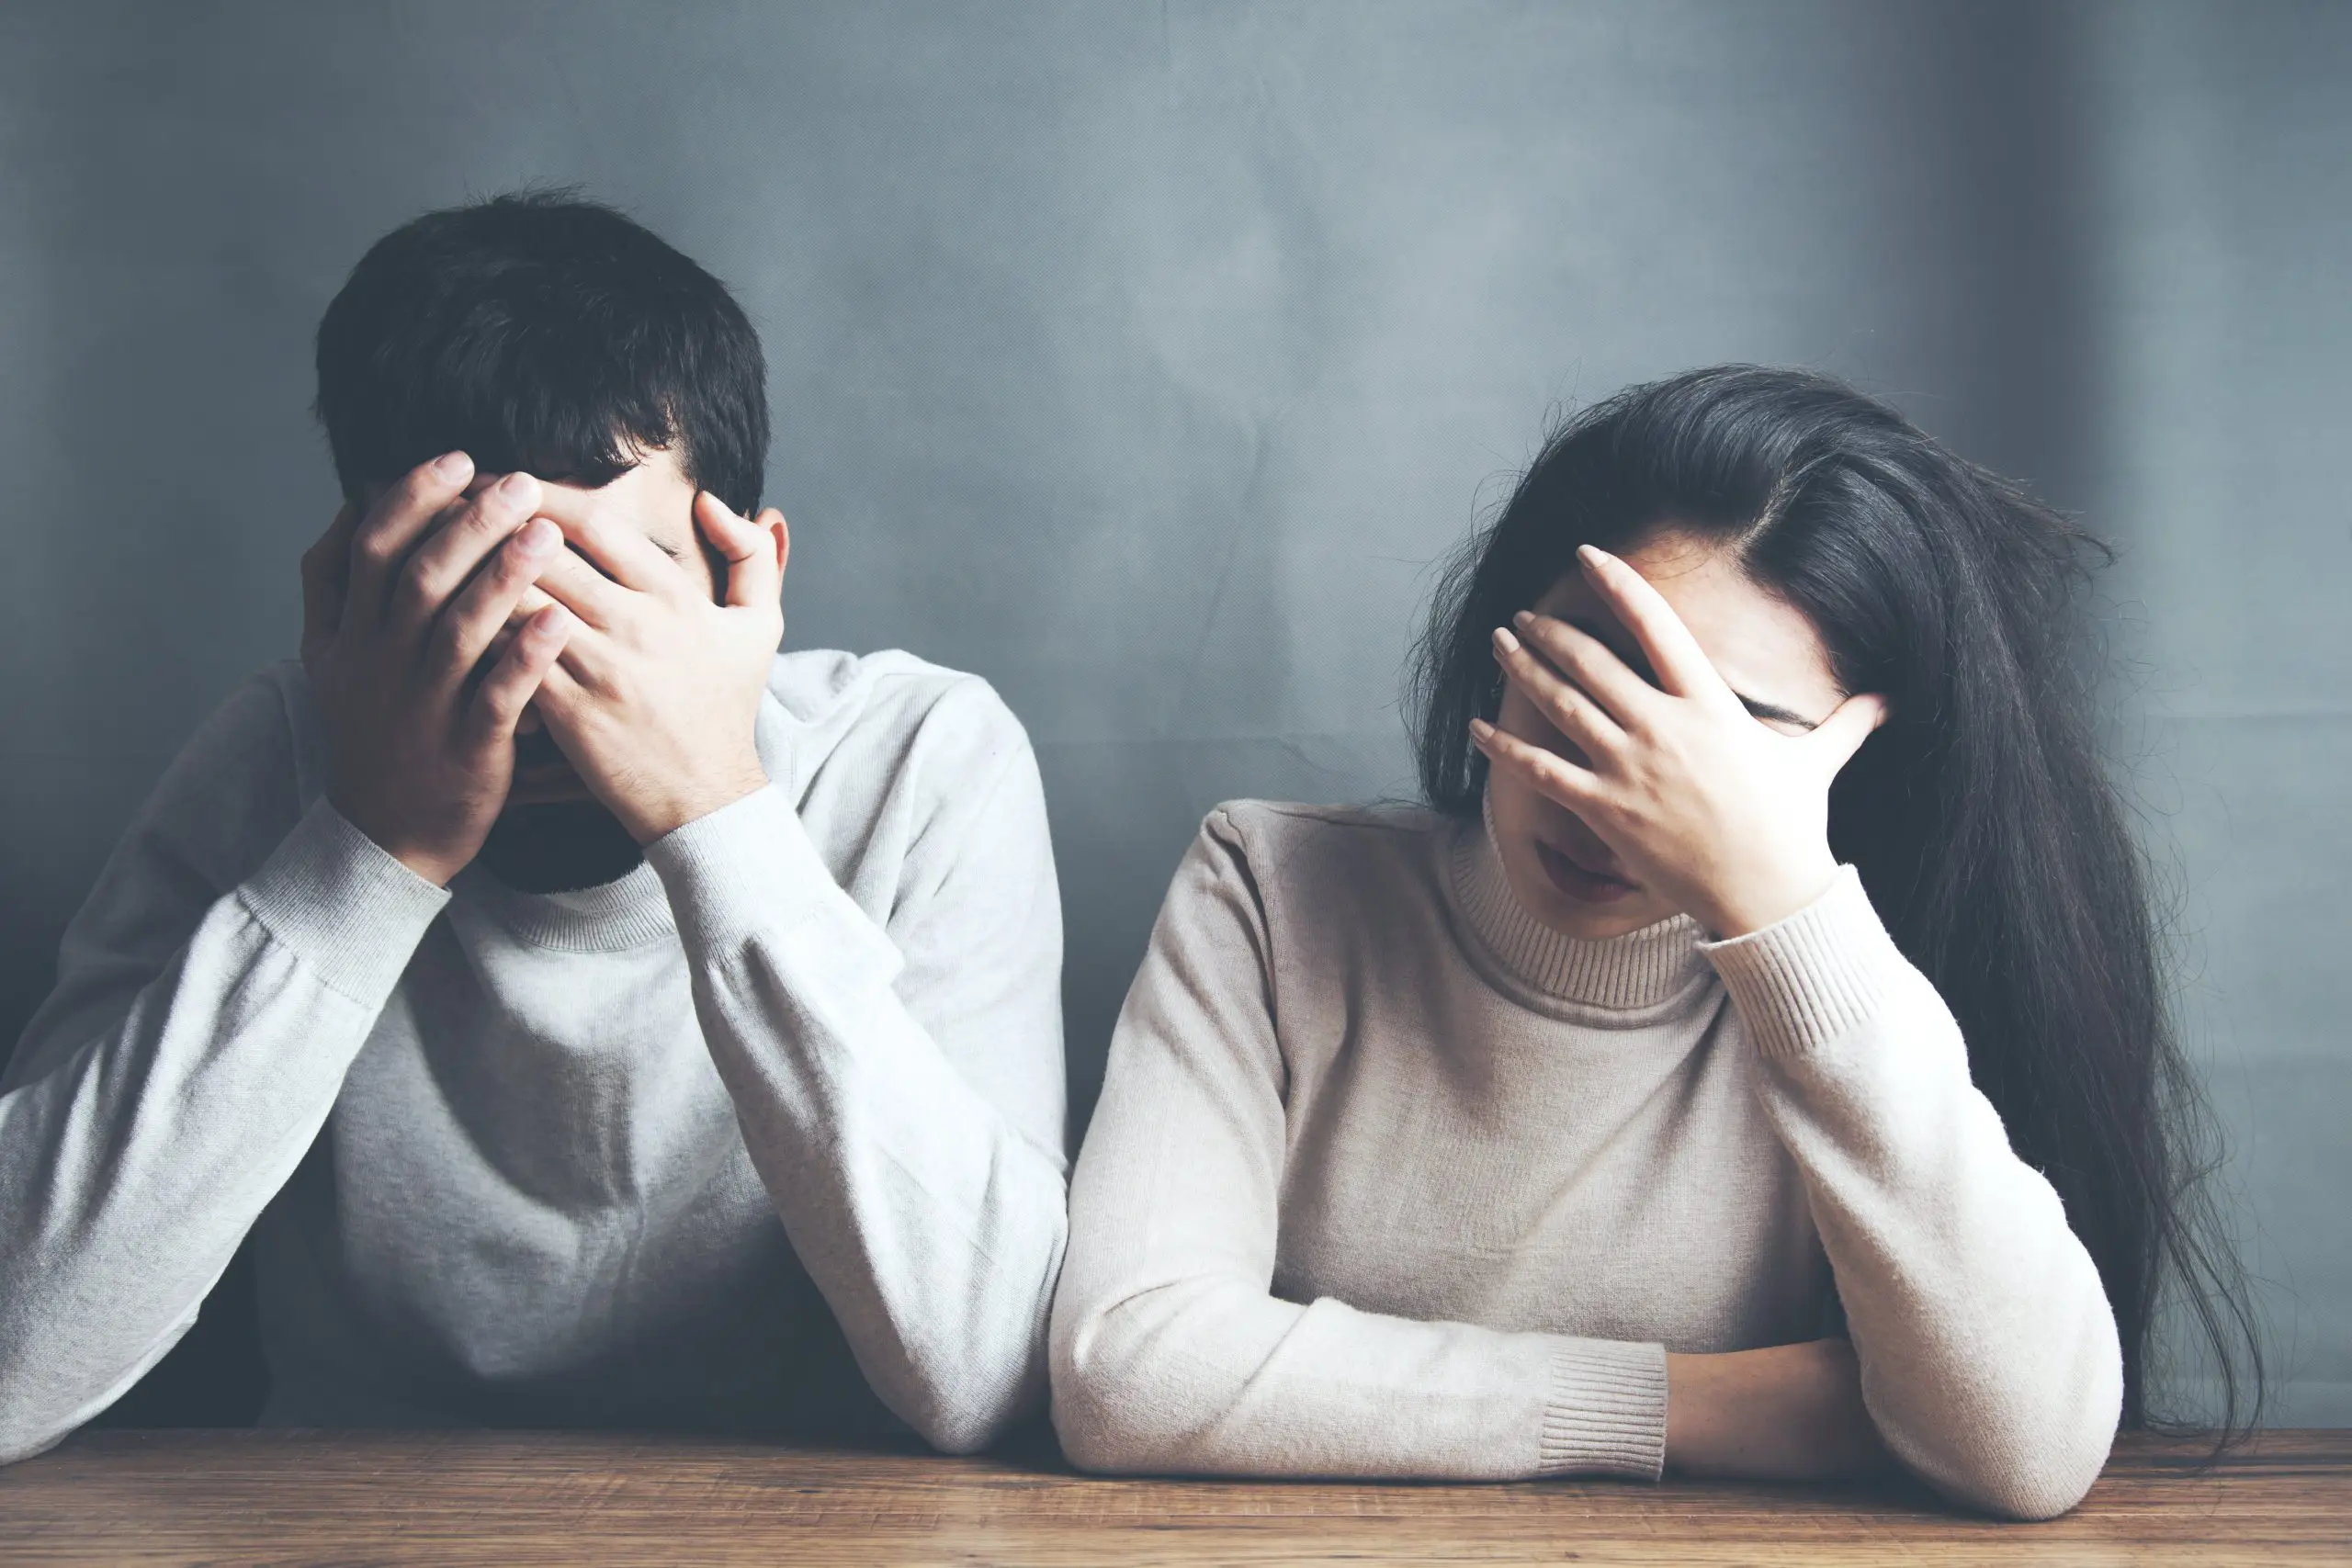  افسردگی بعد از طلاق